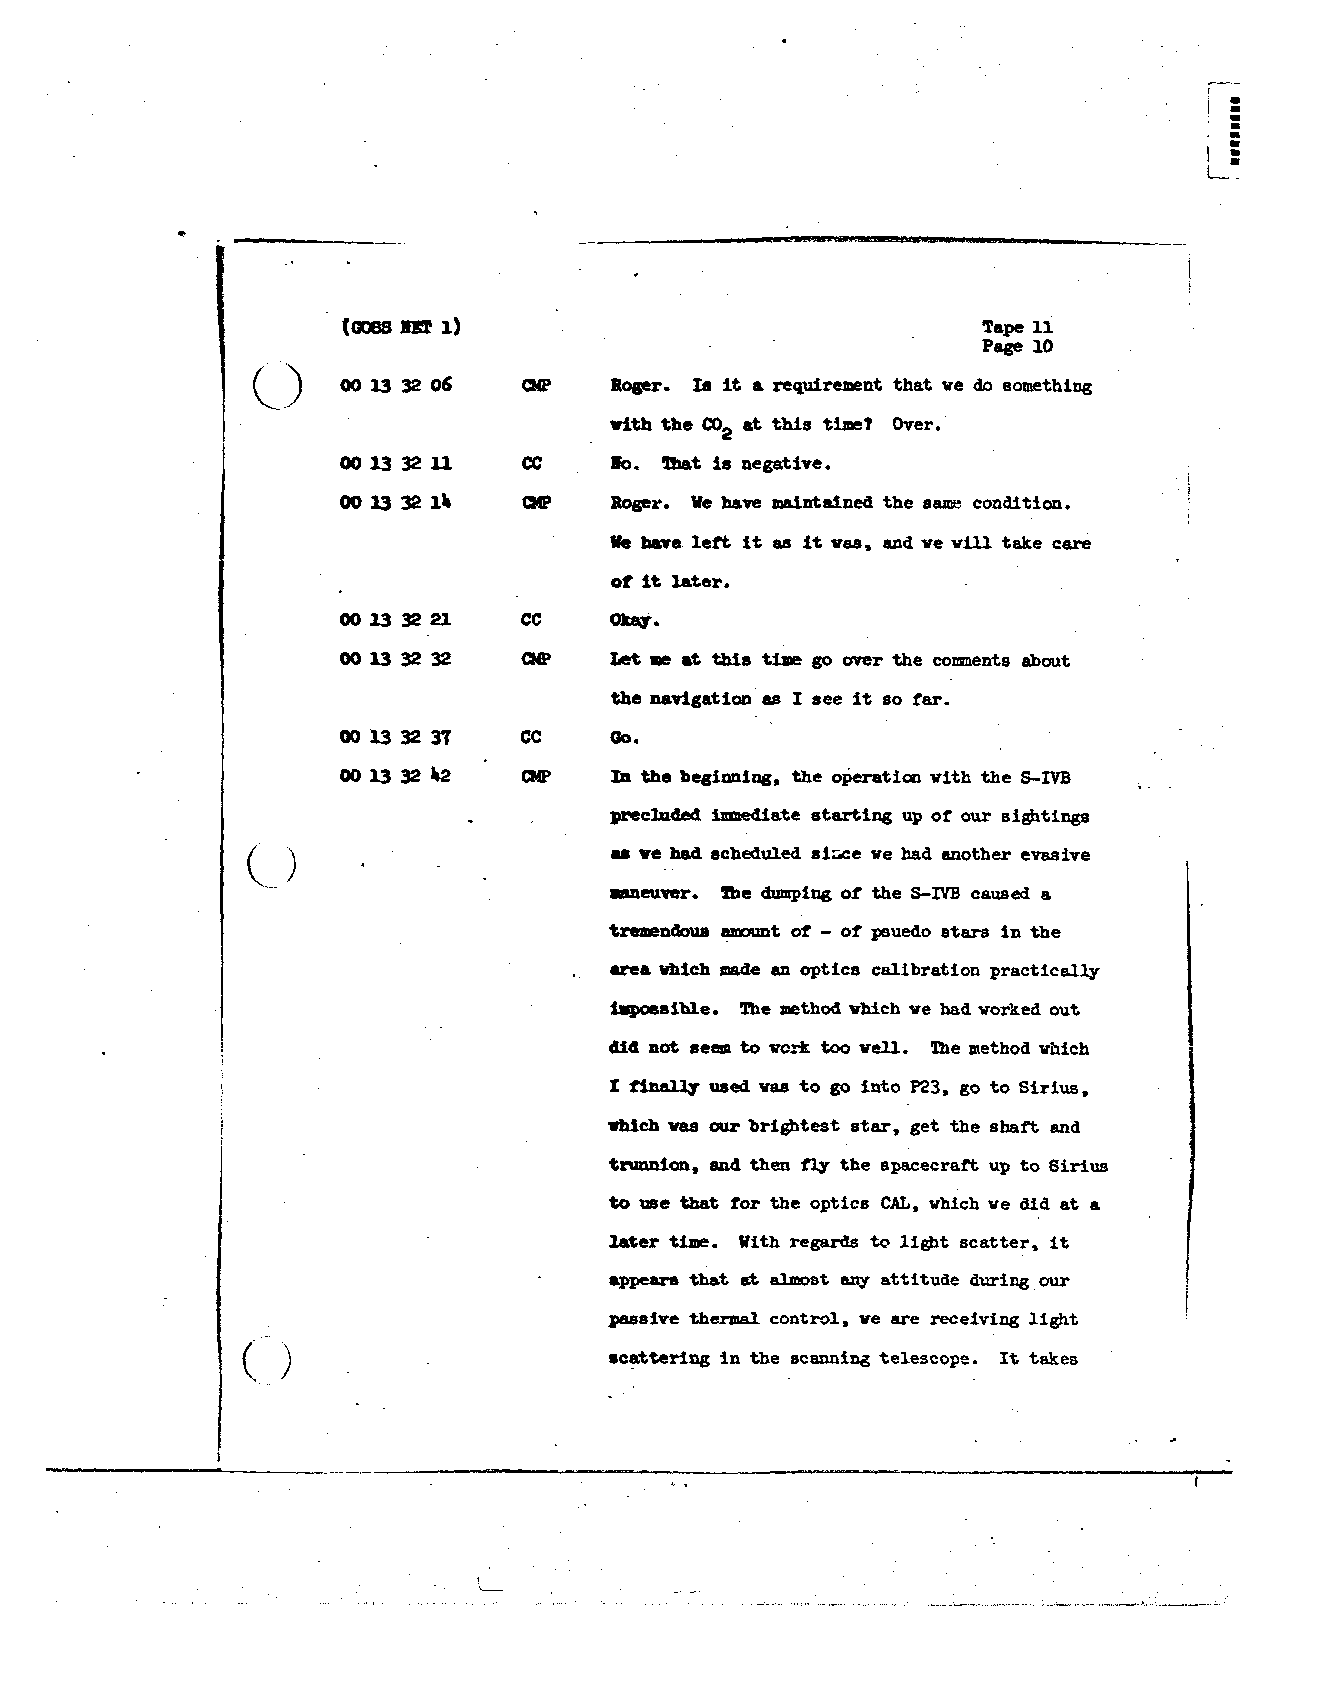 Page 112 of Apollo 8’s original transcript